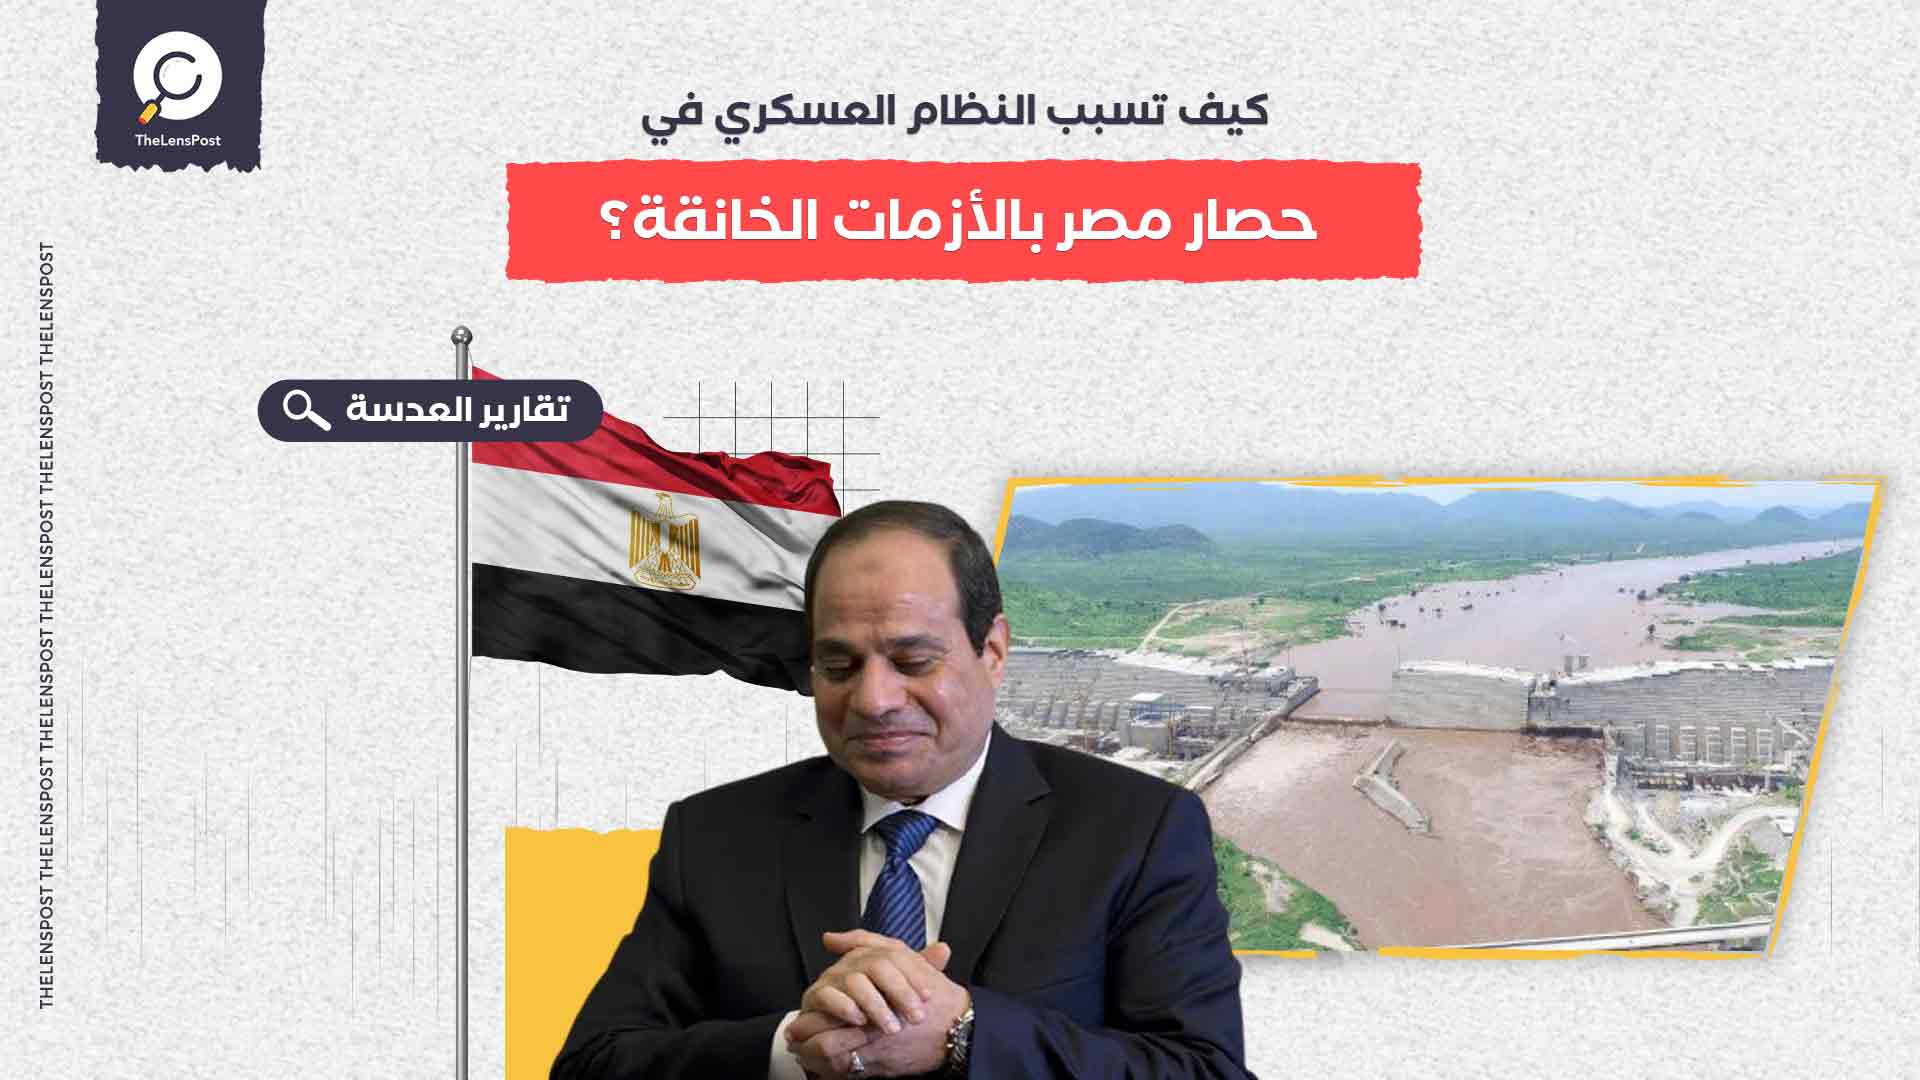 كيف تسبب النظام العسكري في حصار مصر بالأزمات الخانقة؟